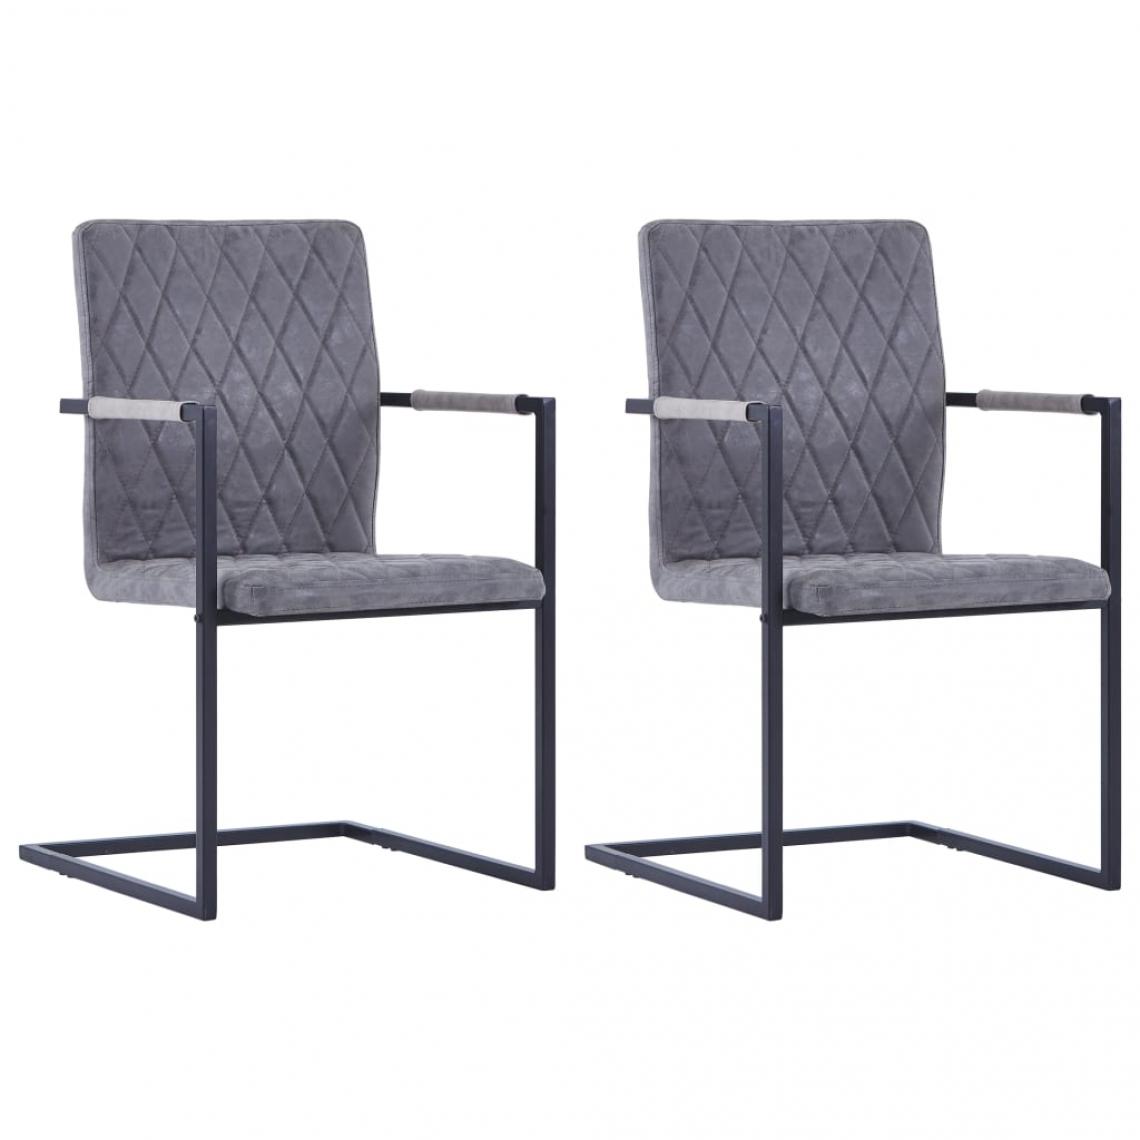 Decoshop26 - Lot de 2 chaises de salle à manger cuisine cantilever design moderne similicuir gris foncé CDS020327 - Chaises